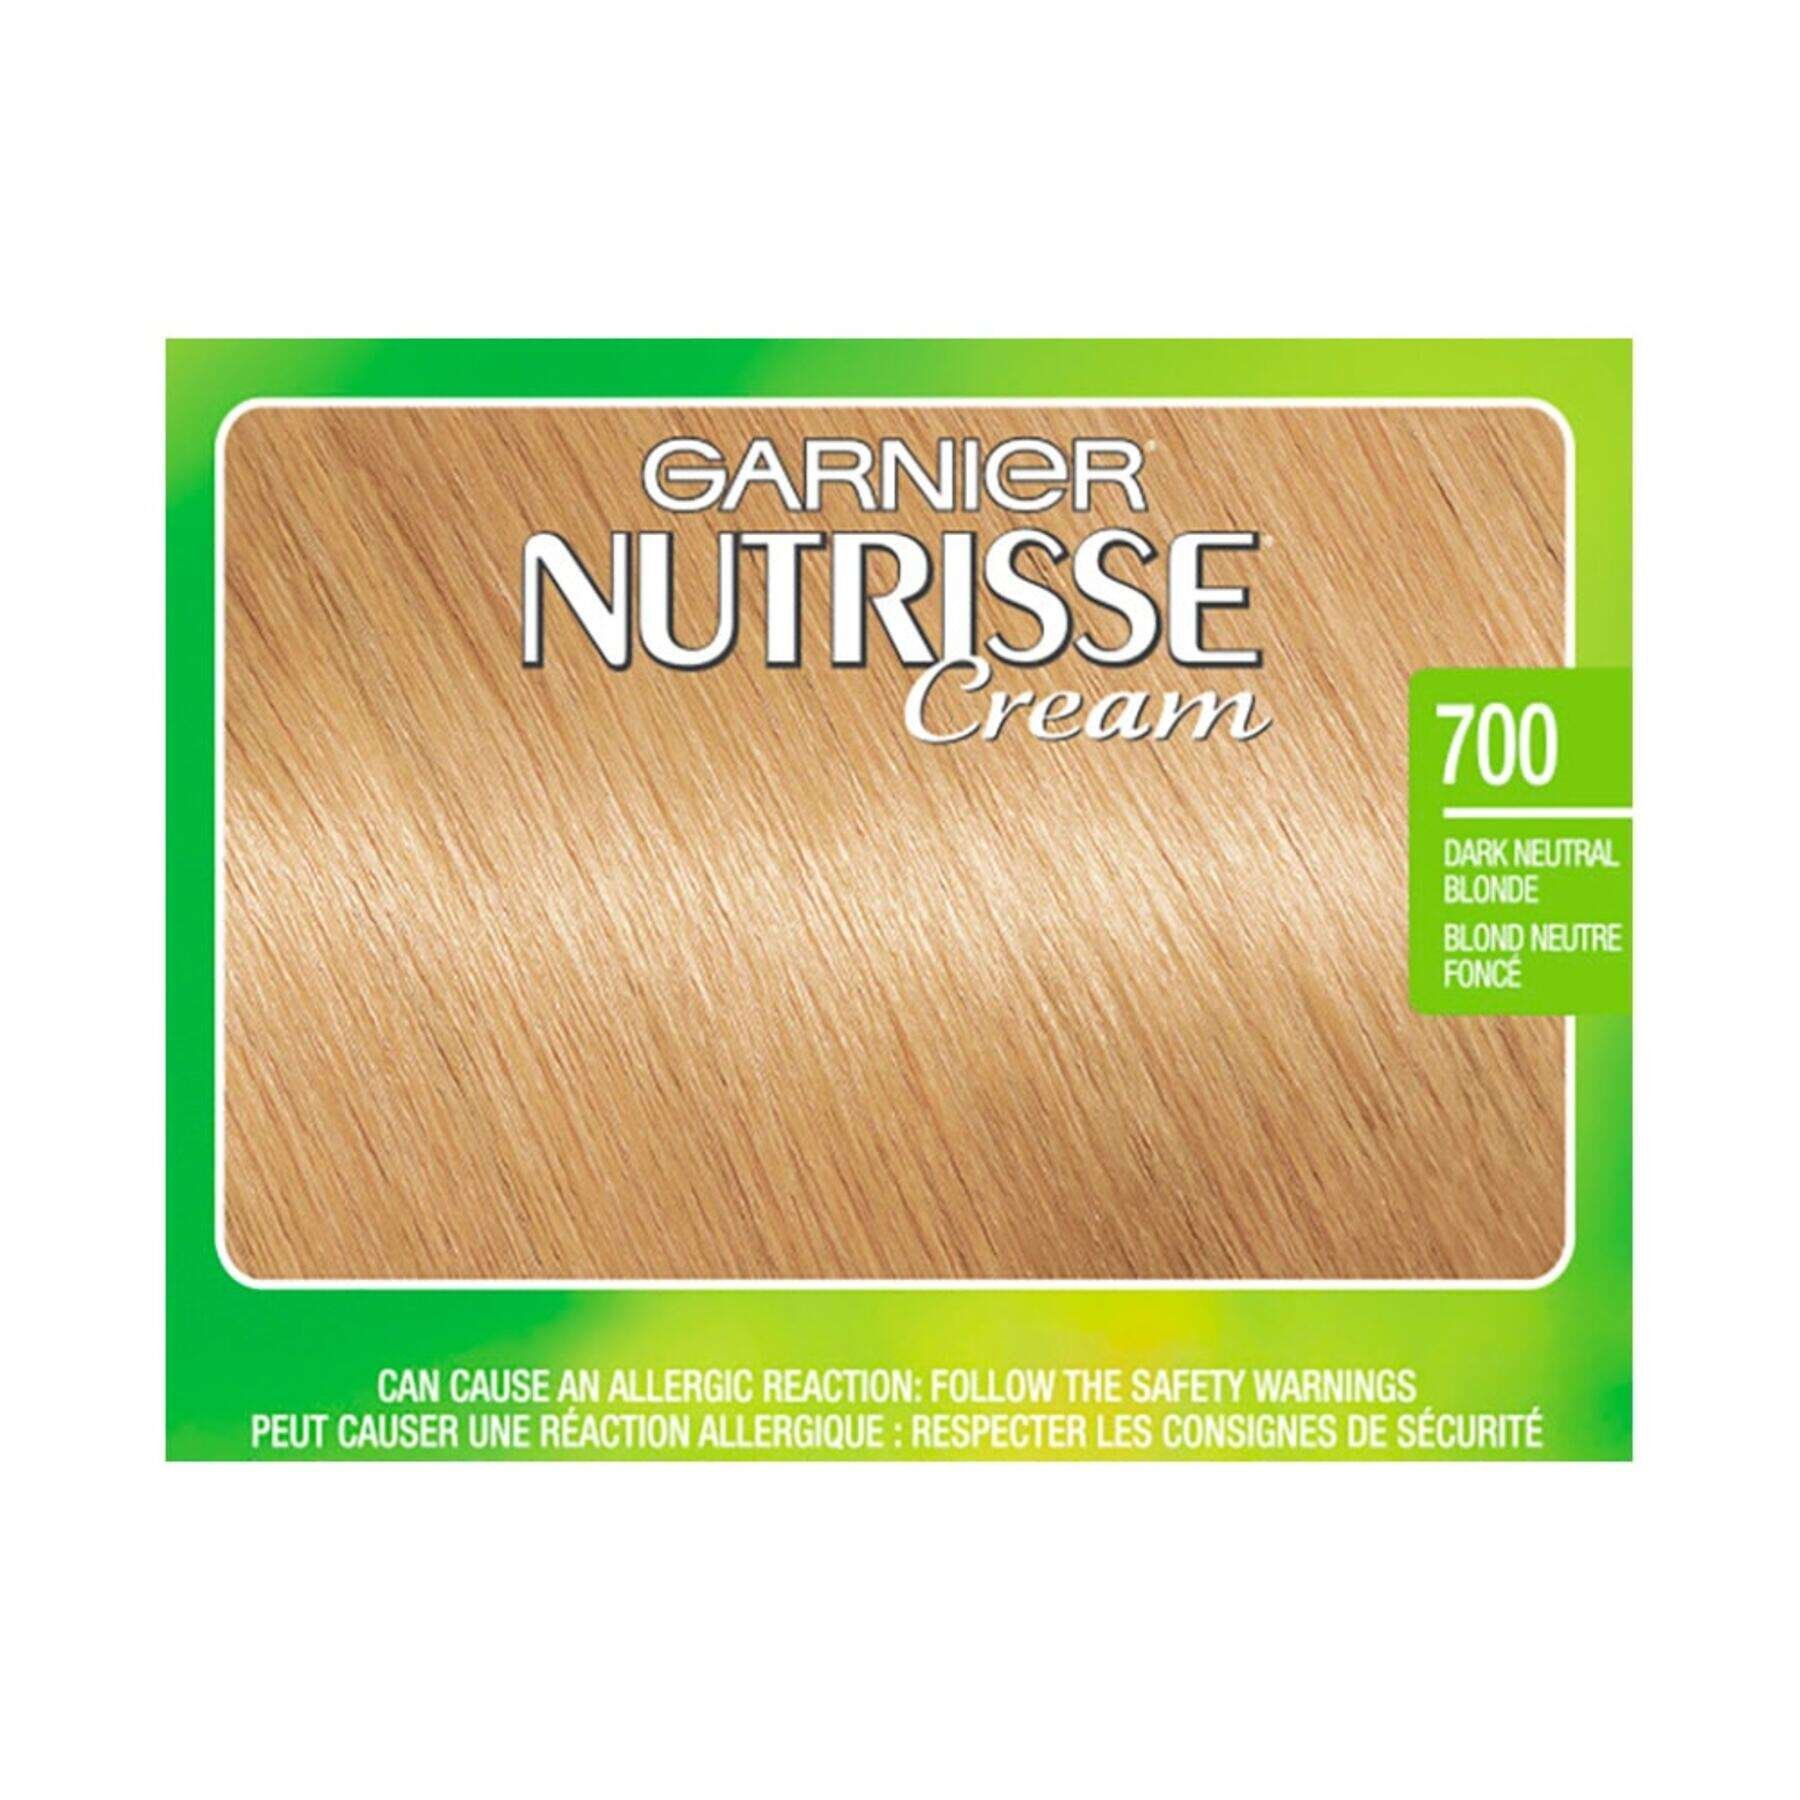 garnier hair dye nutrisse cream 700 dark neutral blonde 0603084454754 swatch